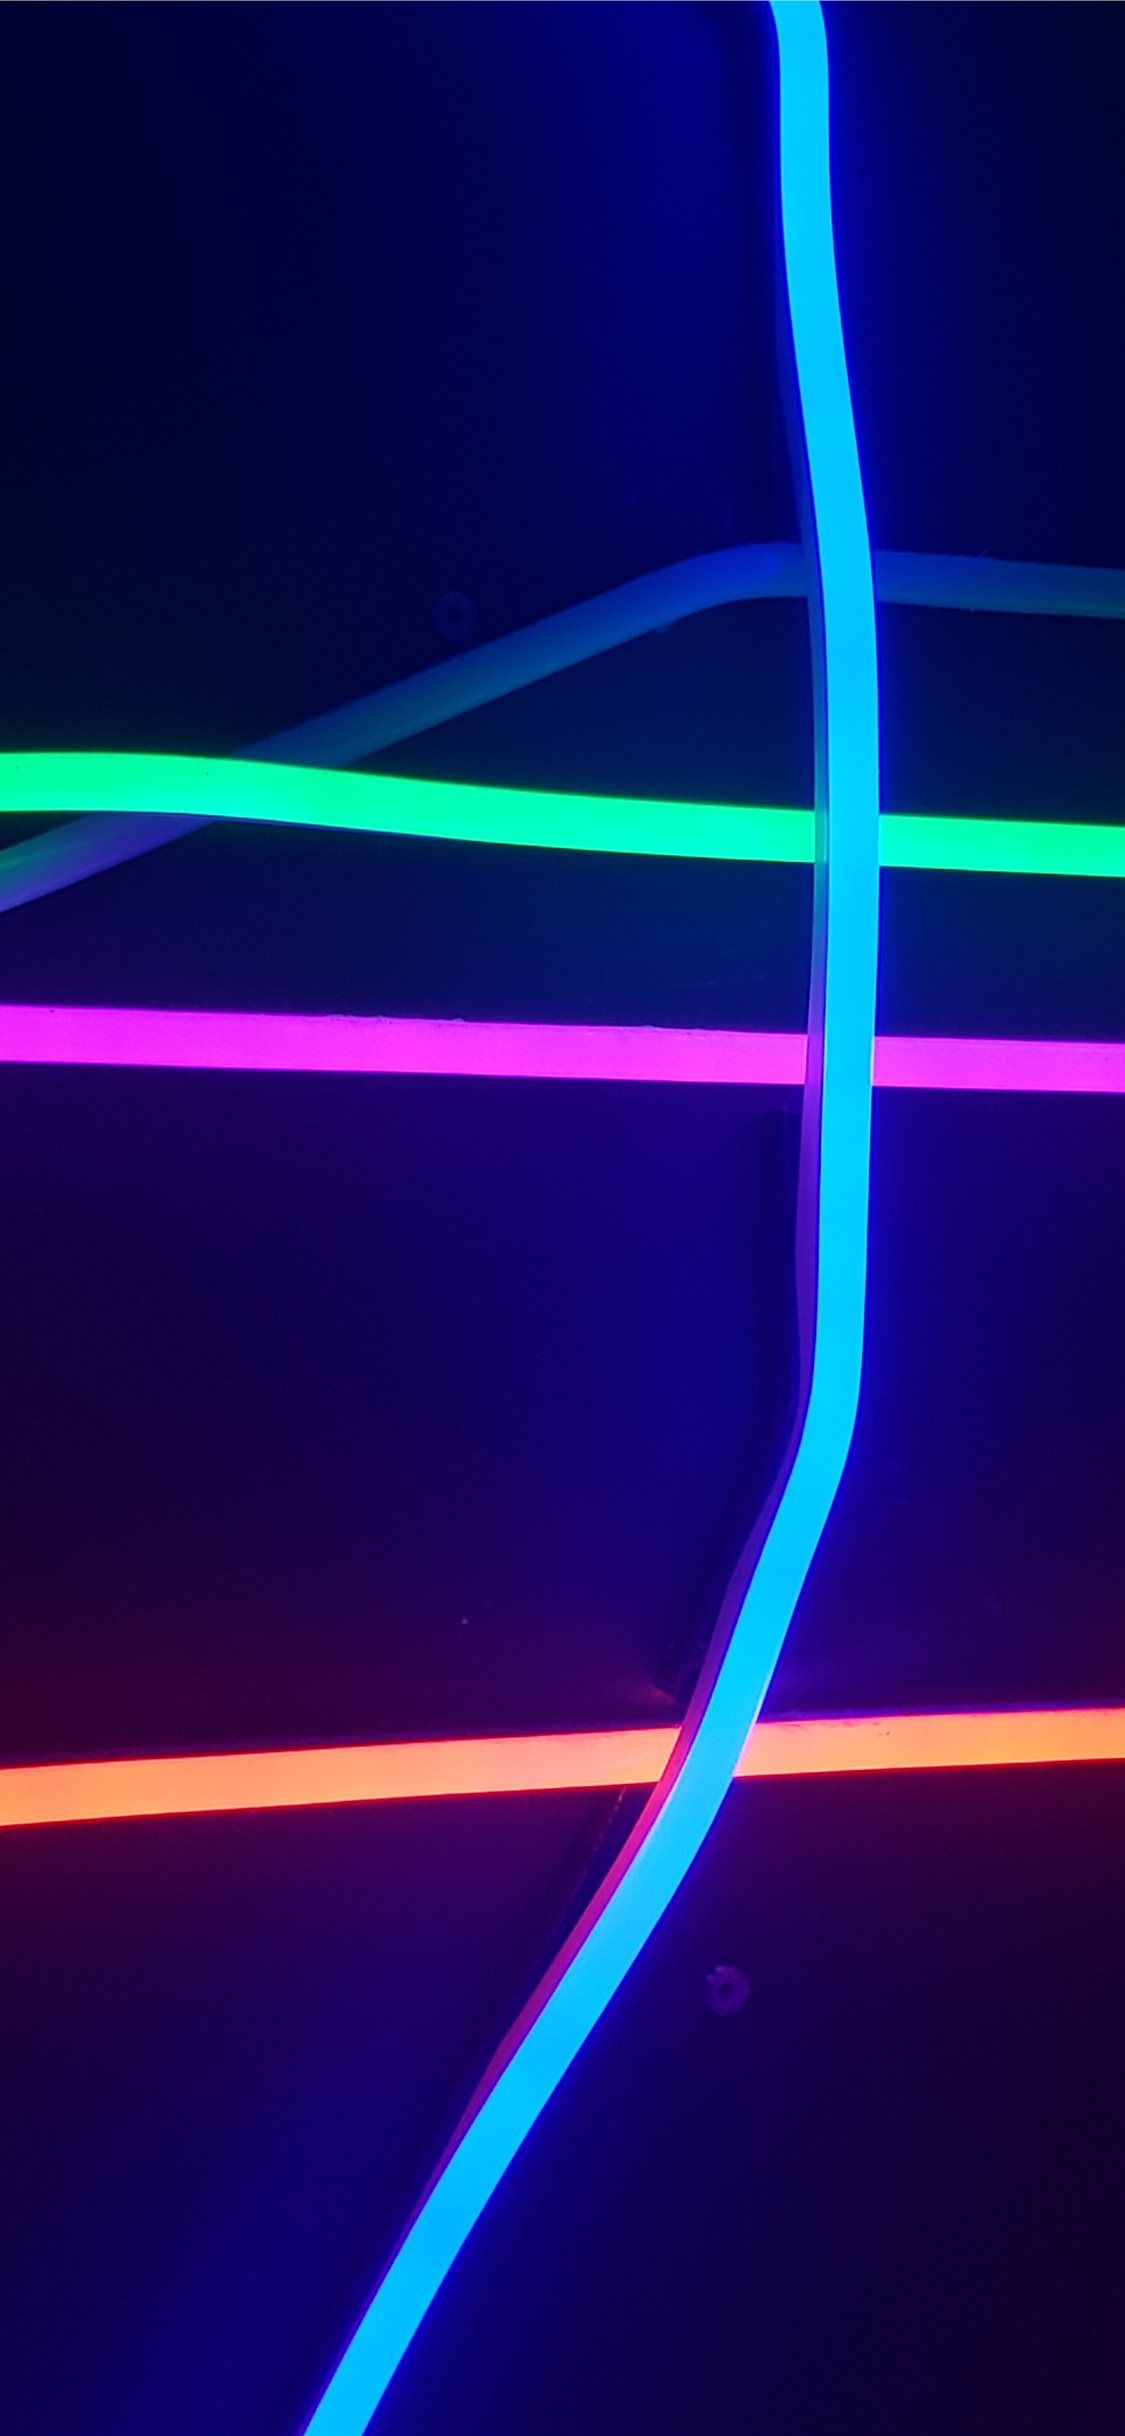 Best Neon iPhone 11 Wallpapers HD [2020]